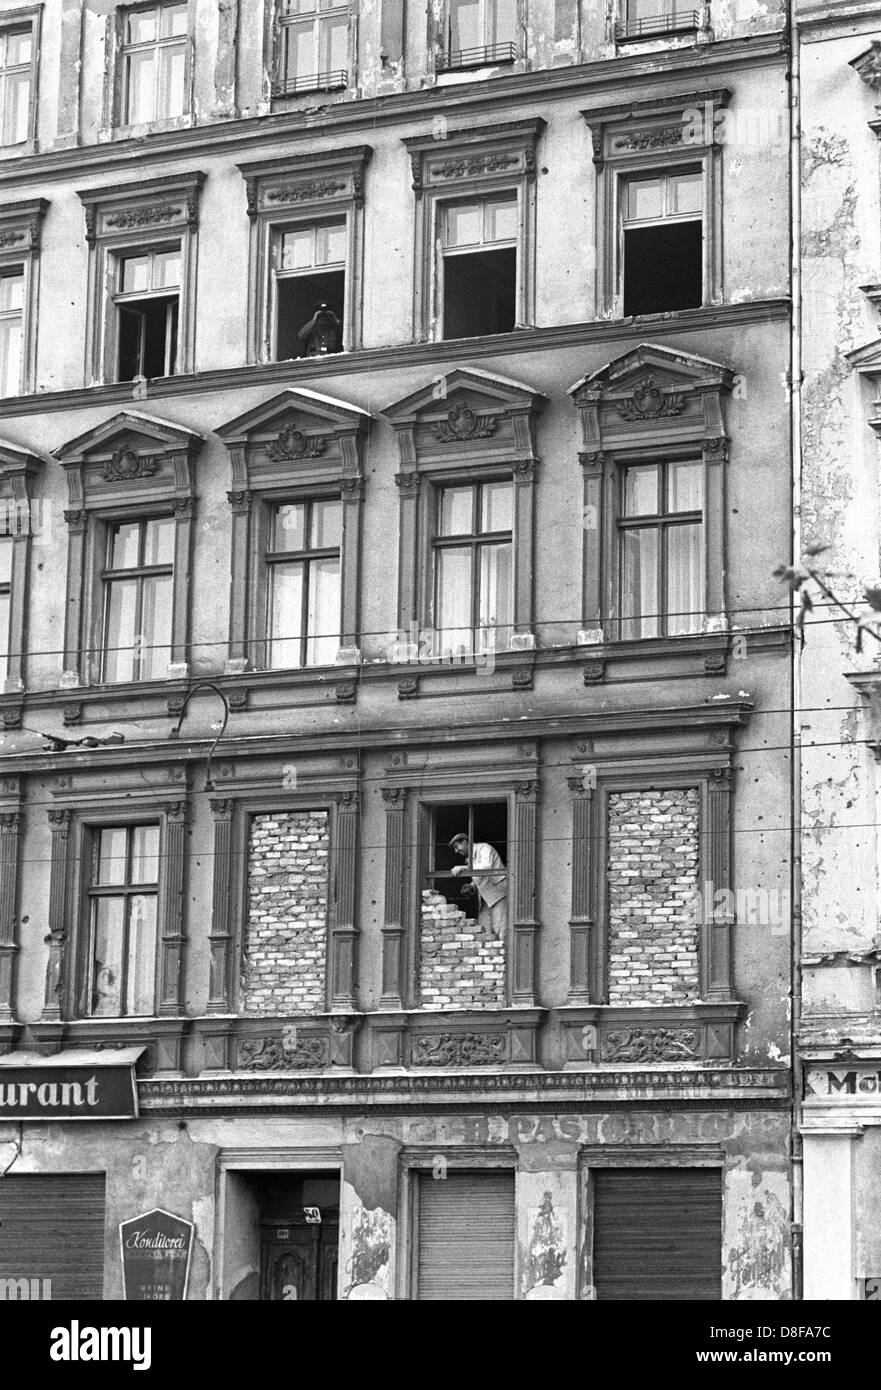 In einem der Grenzhäuser an der Bernauerstraße werden am 1. Oktober 1961 Fenster, die den Blick auf Berlino Ovest freigeben, zugemauert. Kurz nach dem Mauerbau sind Menschen aus den Fenstern der im Ostteil der Stadt gelegenen Häuser auf die zum Westteil gehörende Bernauer Straße geflüchtet. Am frühen Sonntagmorgen des 13. Agosto 1961 wurde unter der Aufsicht von bewaffneten Streitkräften der DDR mit der Errichtung von Straßensperren Stacheldraht aus dem und Bau einer Mauer begonnen, um den Ostteil berlinese Westteil vom abzusperren. Die Mauer sollte den ständig steigenden Flüchtlingsstrom von Ost- Foto Stock